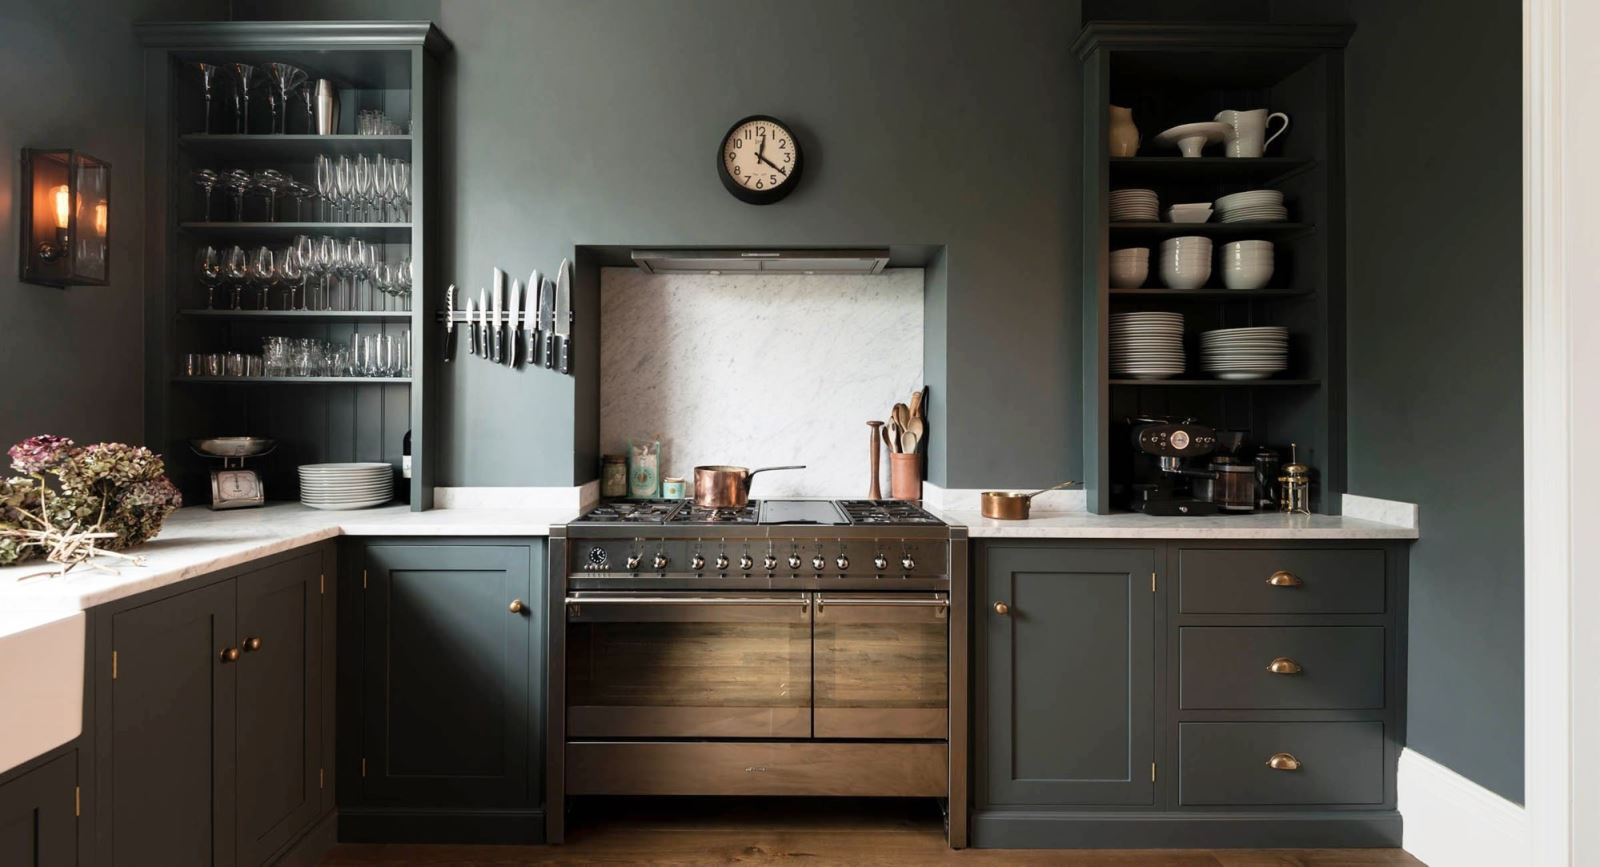 Xu hướng sử dụng màu tối cho nội thất nhà bếp trở nên thịnh hành hơn bao giờ hết, đặc biệt là hai màu đen và xanh navy.